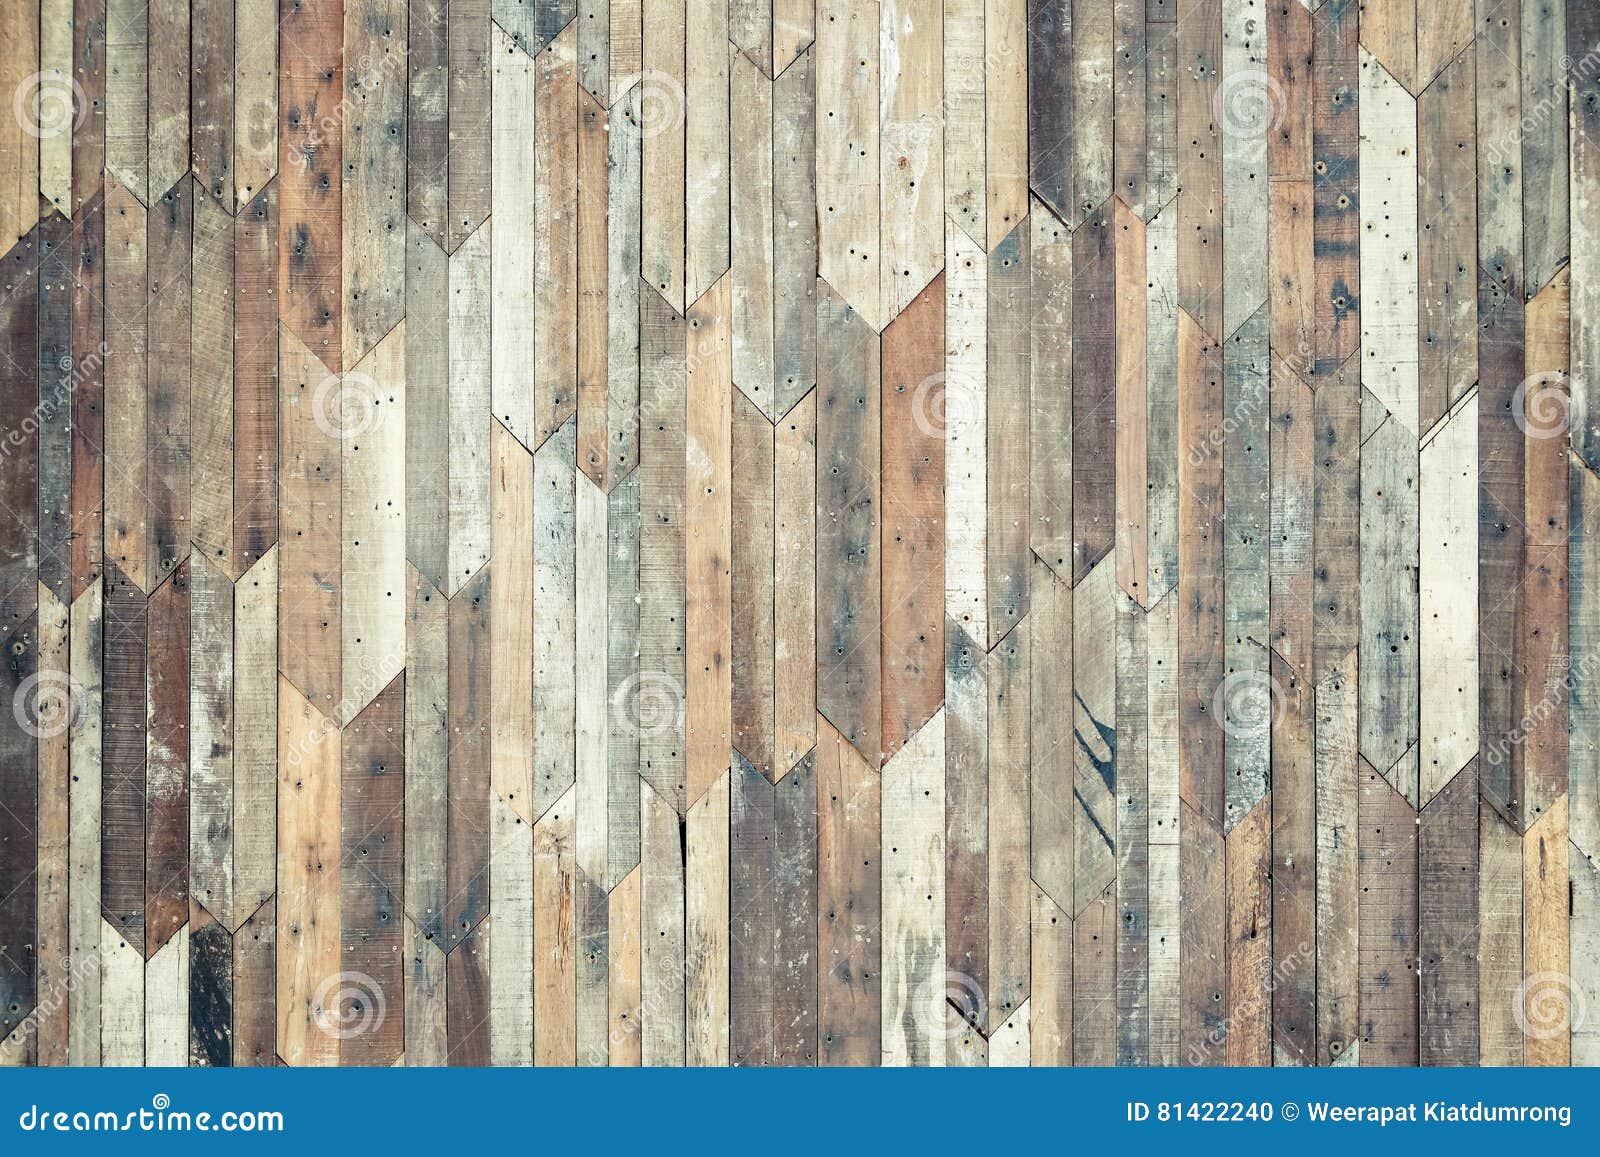 hard wood plank background